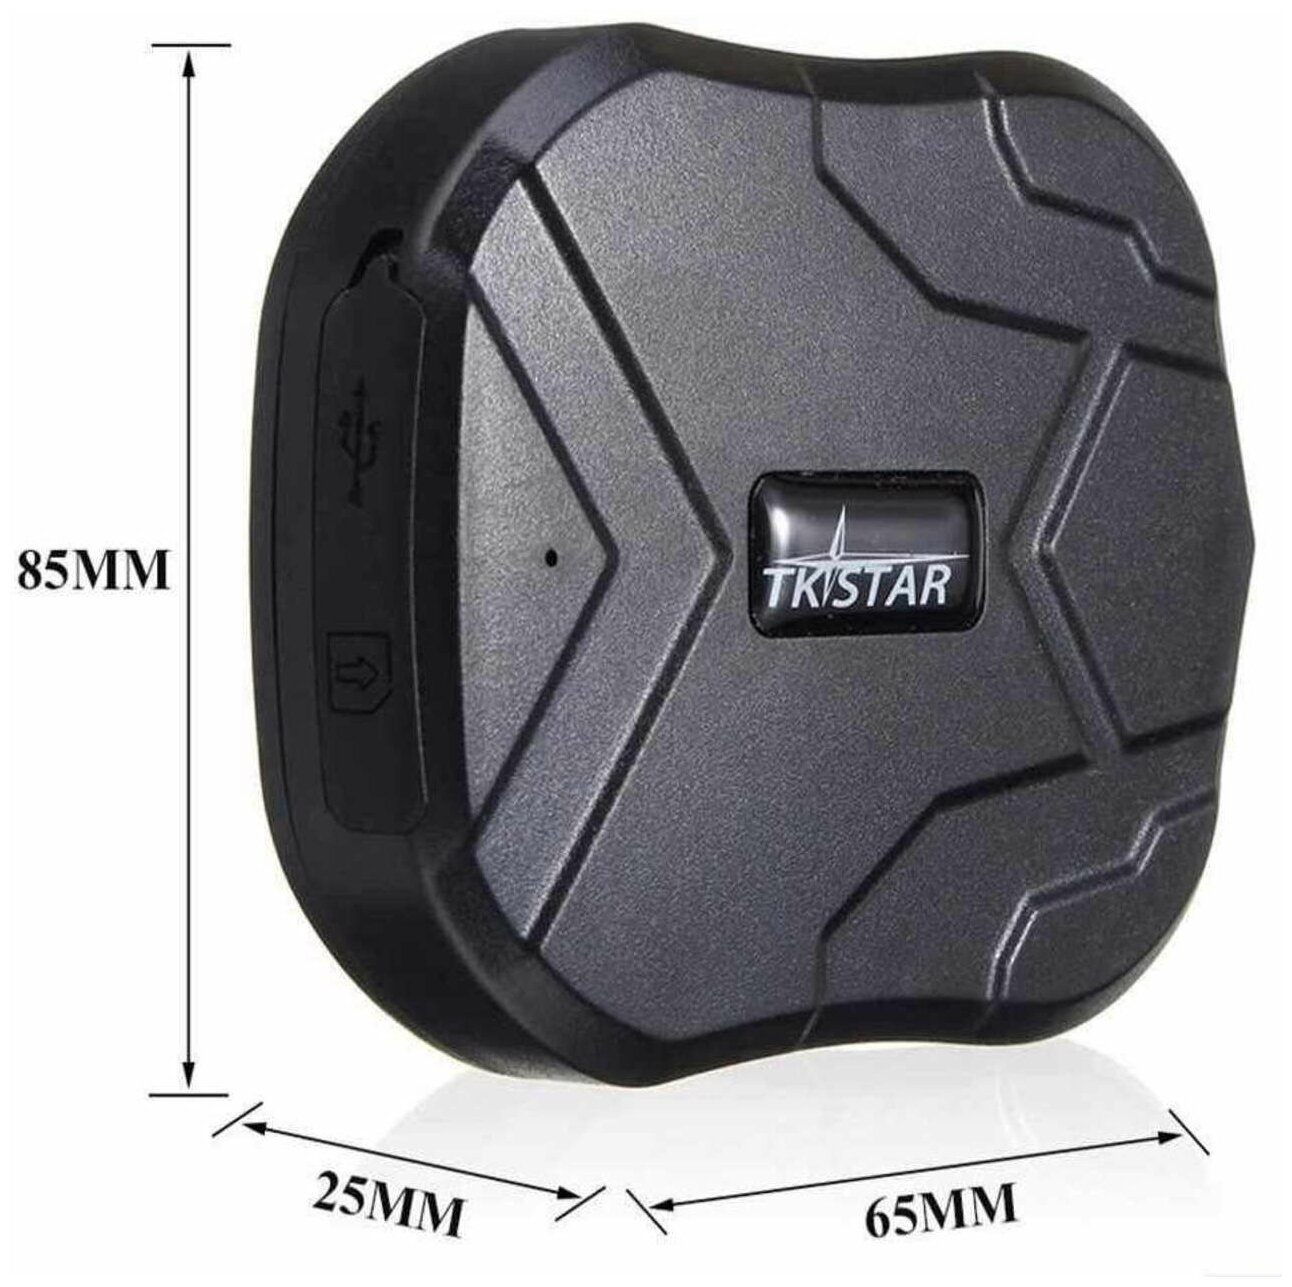 GPS Трекер на магнитах для отслеживания личного автомобиля или мотоцикла TKSTAR TK905 емкость аккумулятора 5000 mAh 22 дней работы в активном режиме